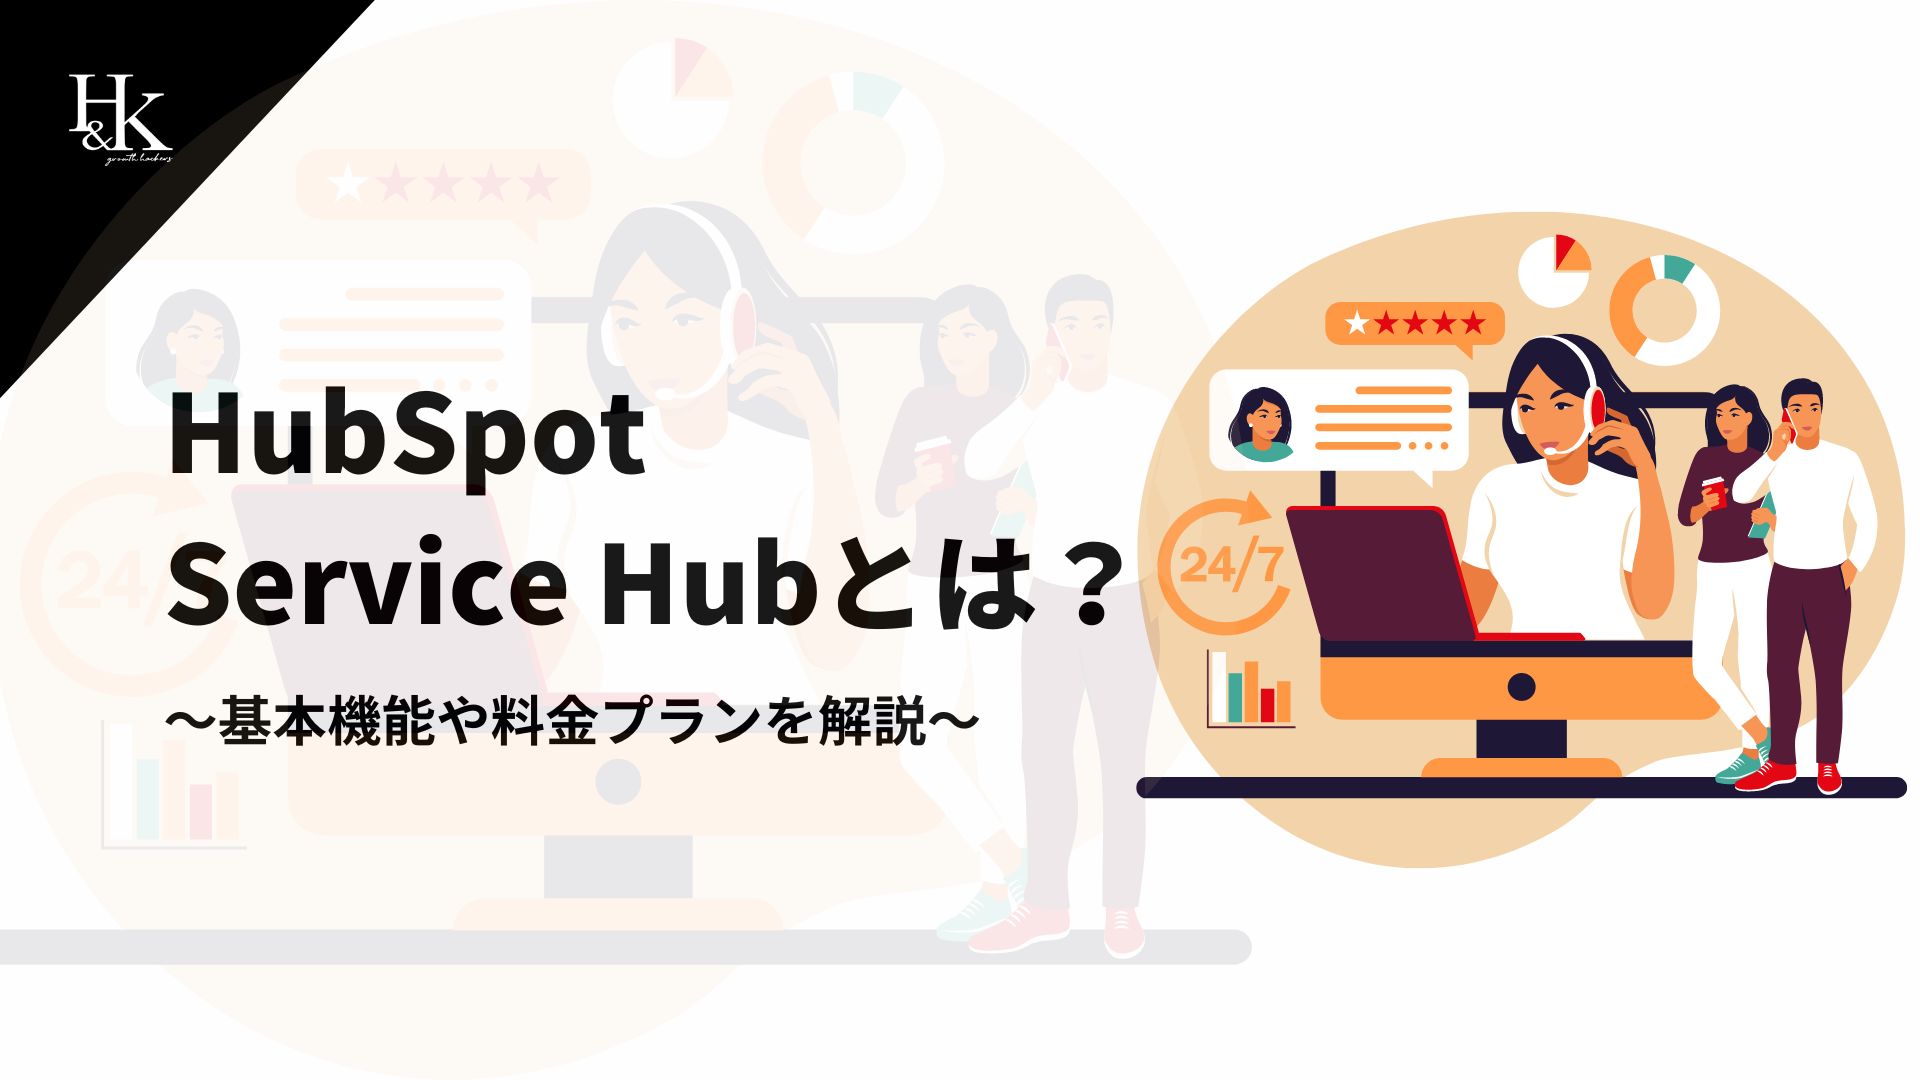 HubSpot Service Hubとは？～基本機能や料金プランを解説～